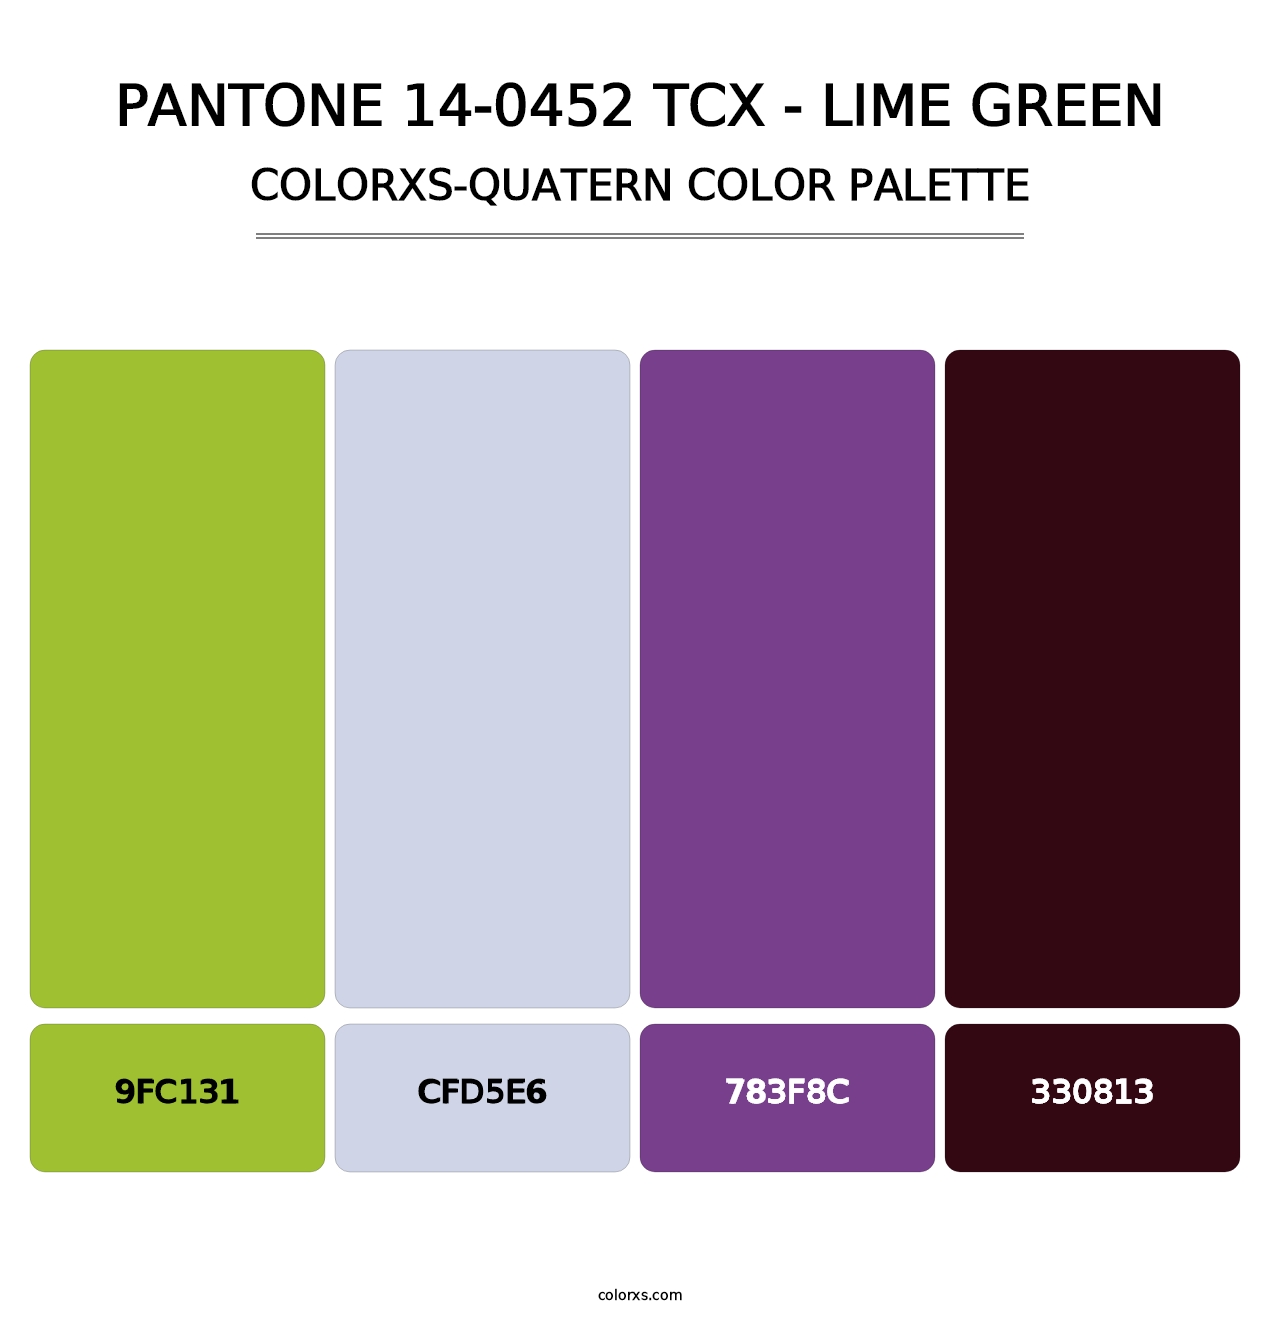 PANTONE 14-0452 TCX - Lime Green - Colorxs Quatern Palette